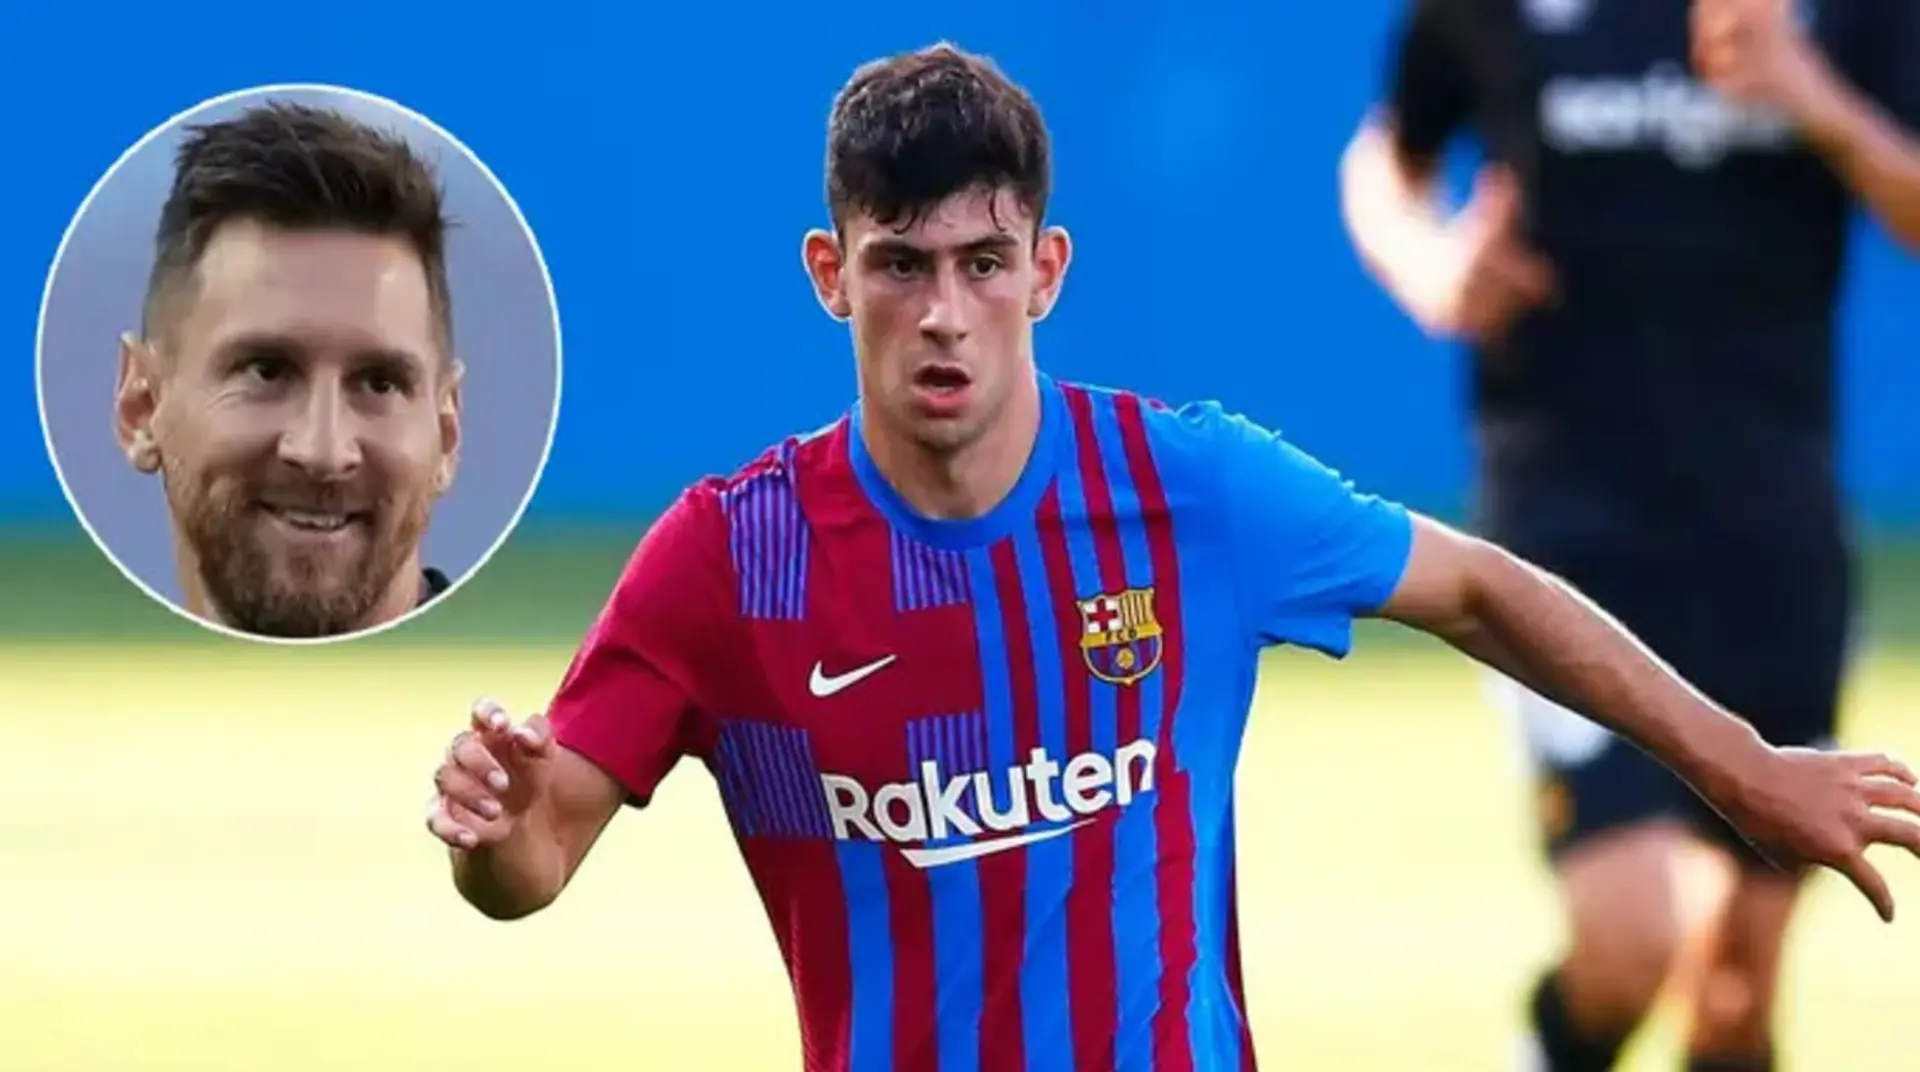 'Es como un mini Messi': un fan detecta 4 similitudes entre Demir y Leo tras el partido brillante del joven ante el Nàstic